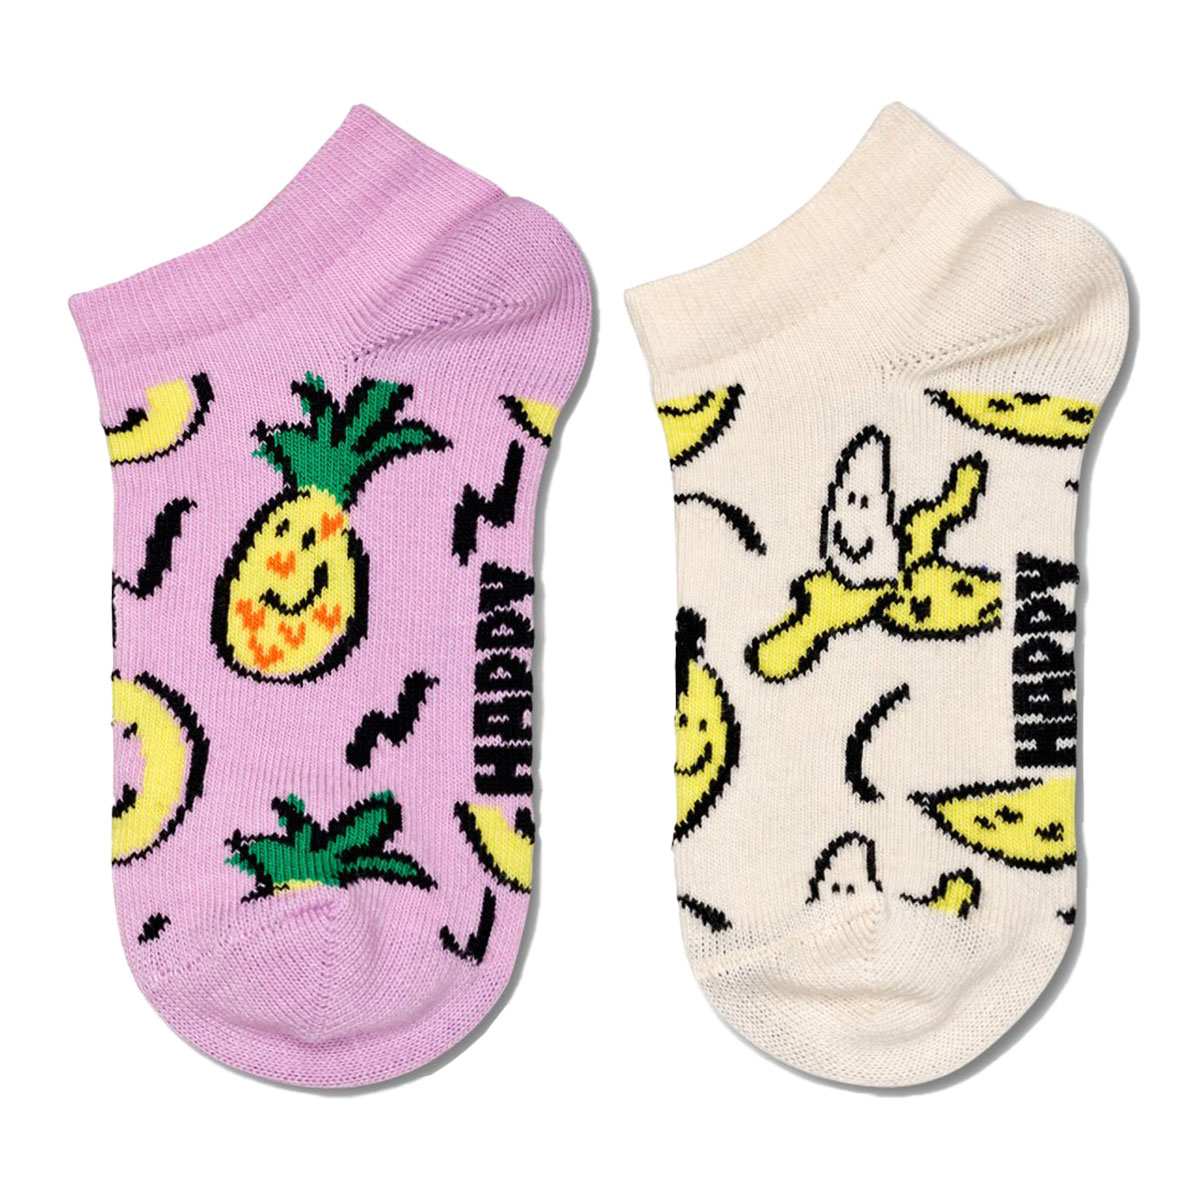 【2足セット】【24SS】Happy Socks ハッピーソックス Kids Fruits ( フルーツ ) 2-Pack Low Socks 2足組 パイナップル＆バナナ柄 子供 スニーカー丈 綿混 ソックス KIDS ジュニア キッズ